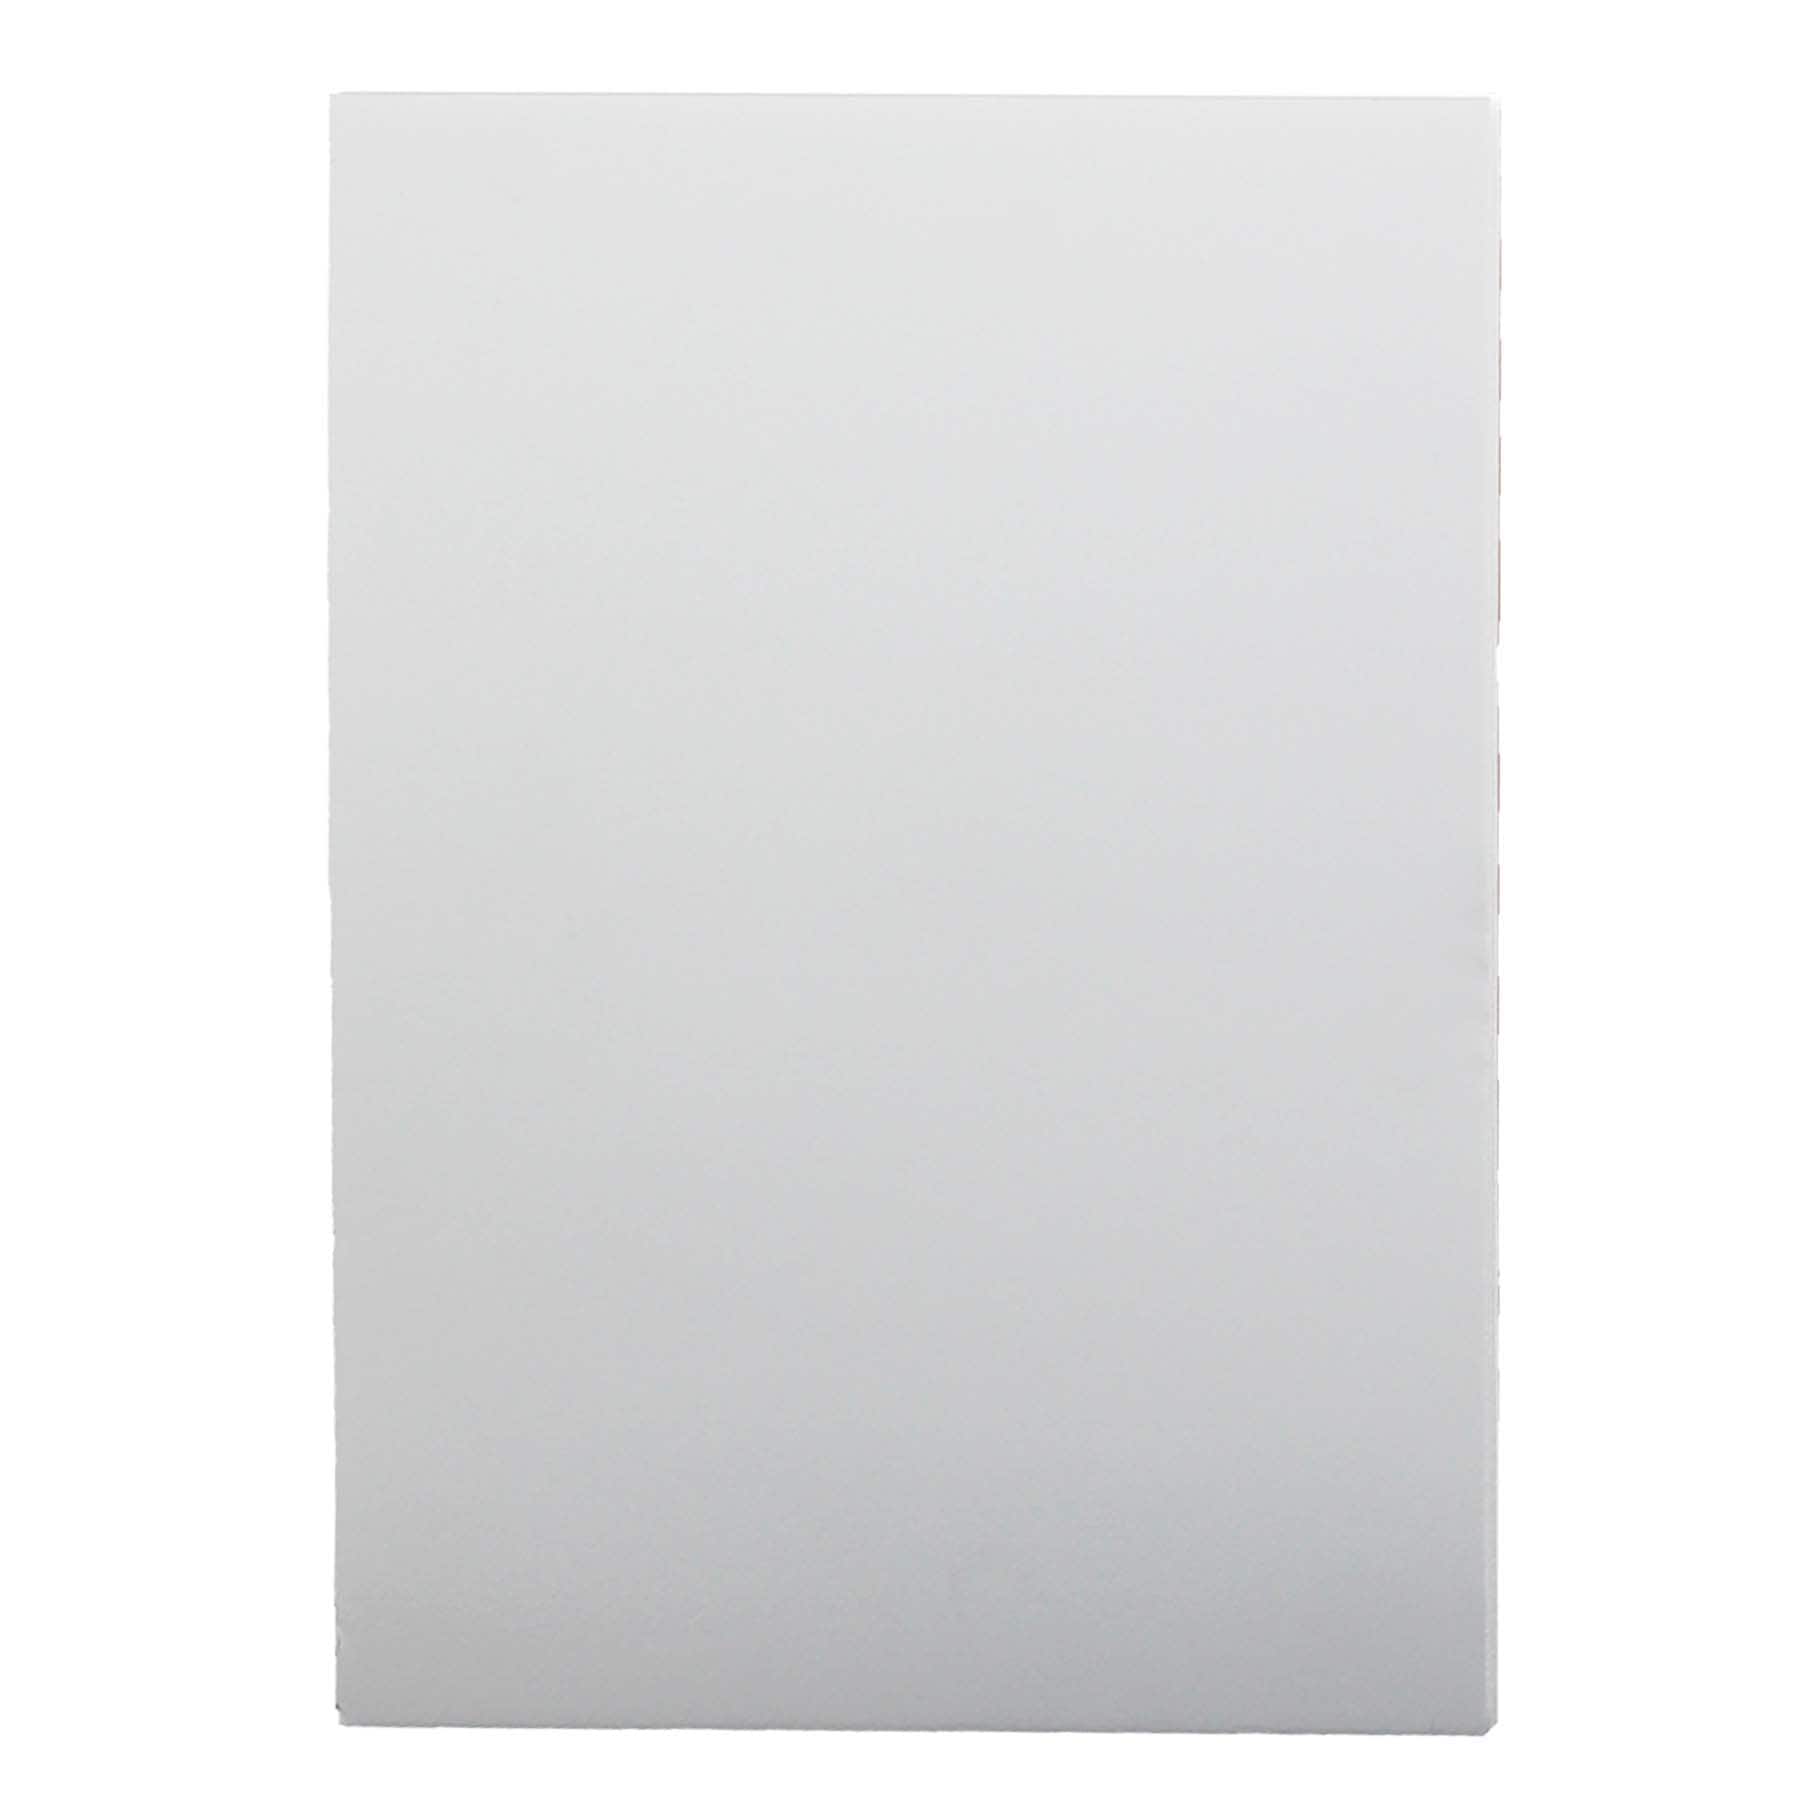 Elmer's Pre-Cut Foamboard - 16 x 20 x 3/16, White, Pkg of 3 Sheets